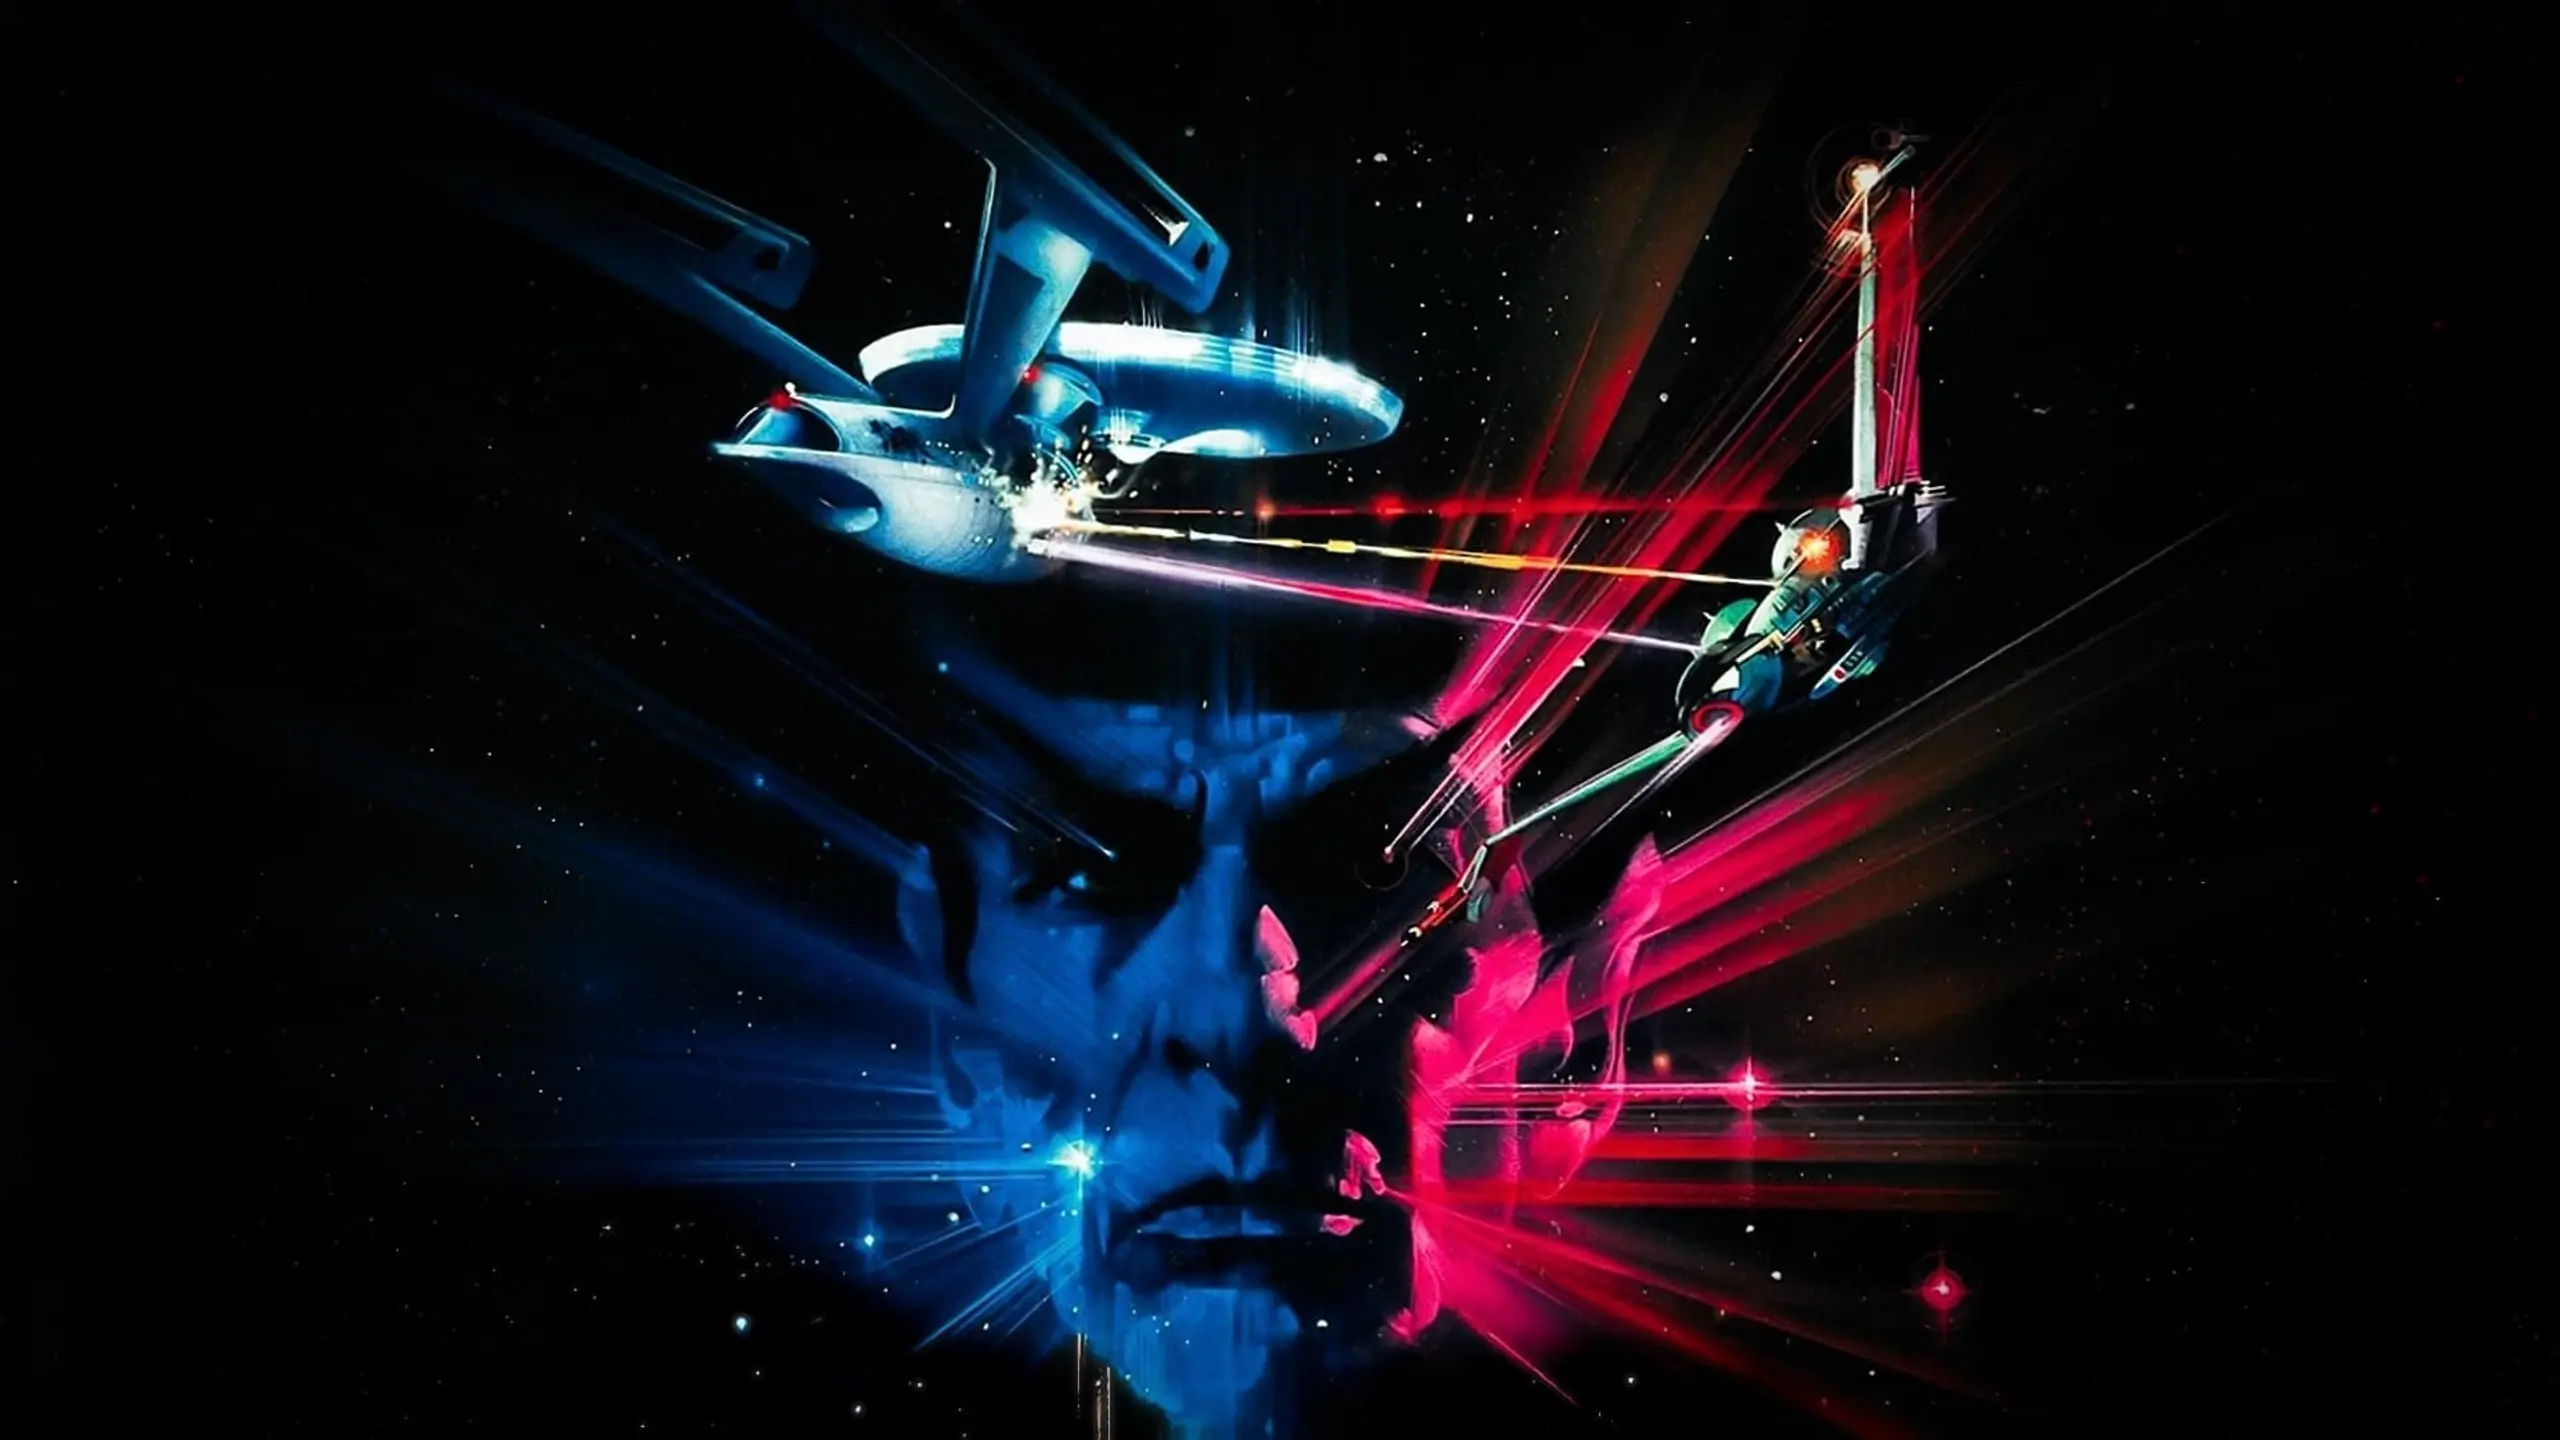 Star Trek III - Auf der Suche nach Mr. Spock